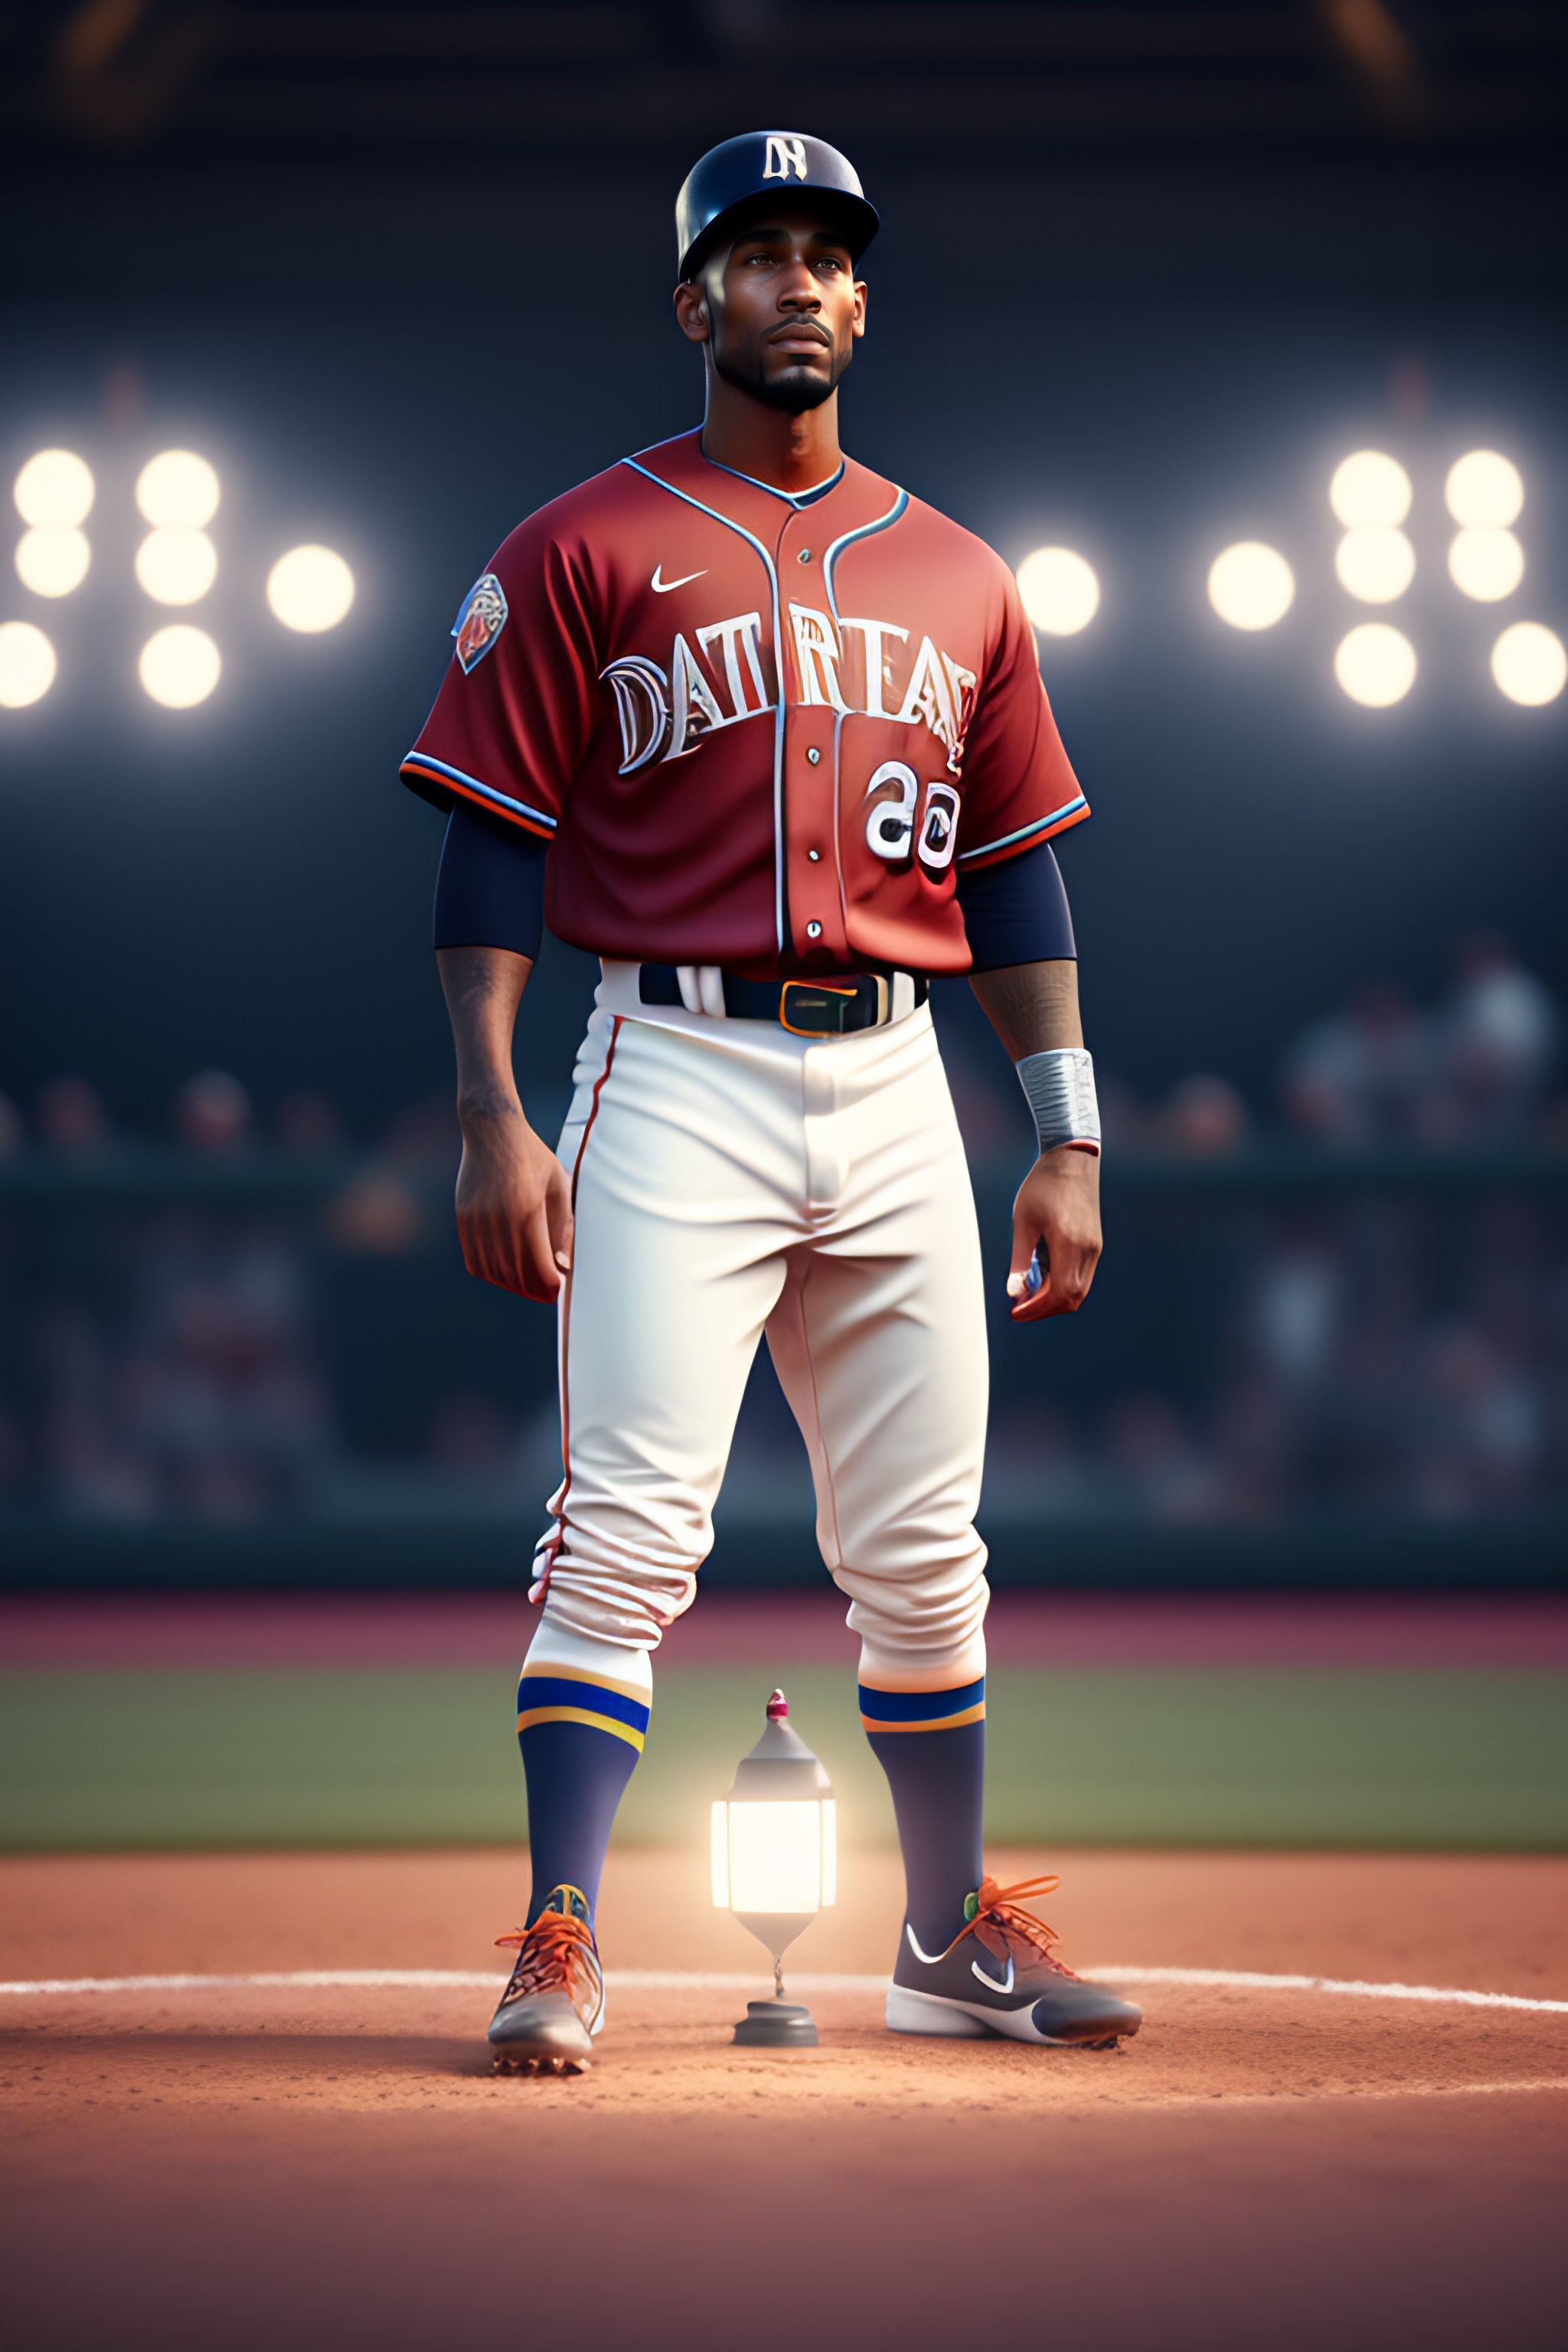 Lexica - Disruptive baseball uniform, unreal engine, cozy indoor